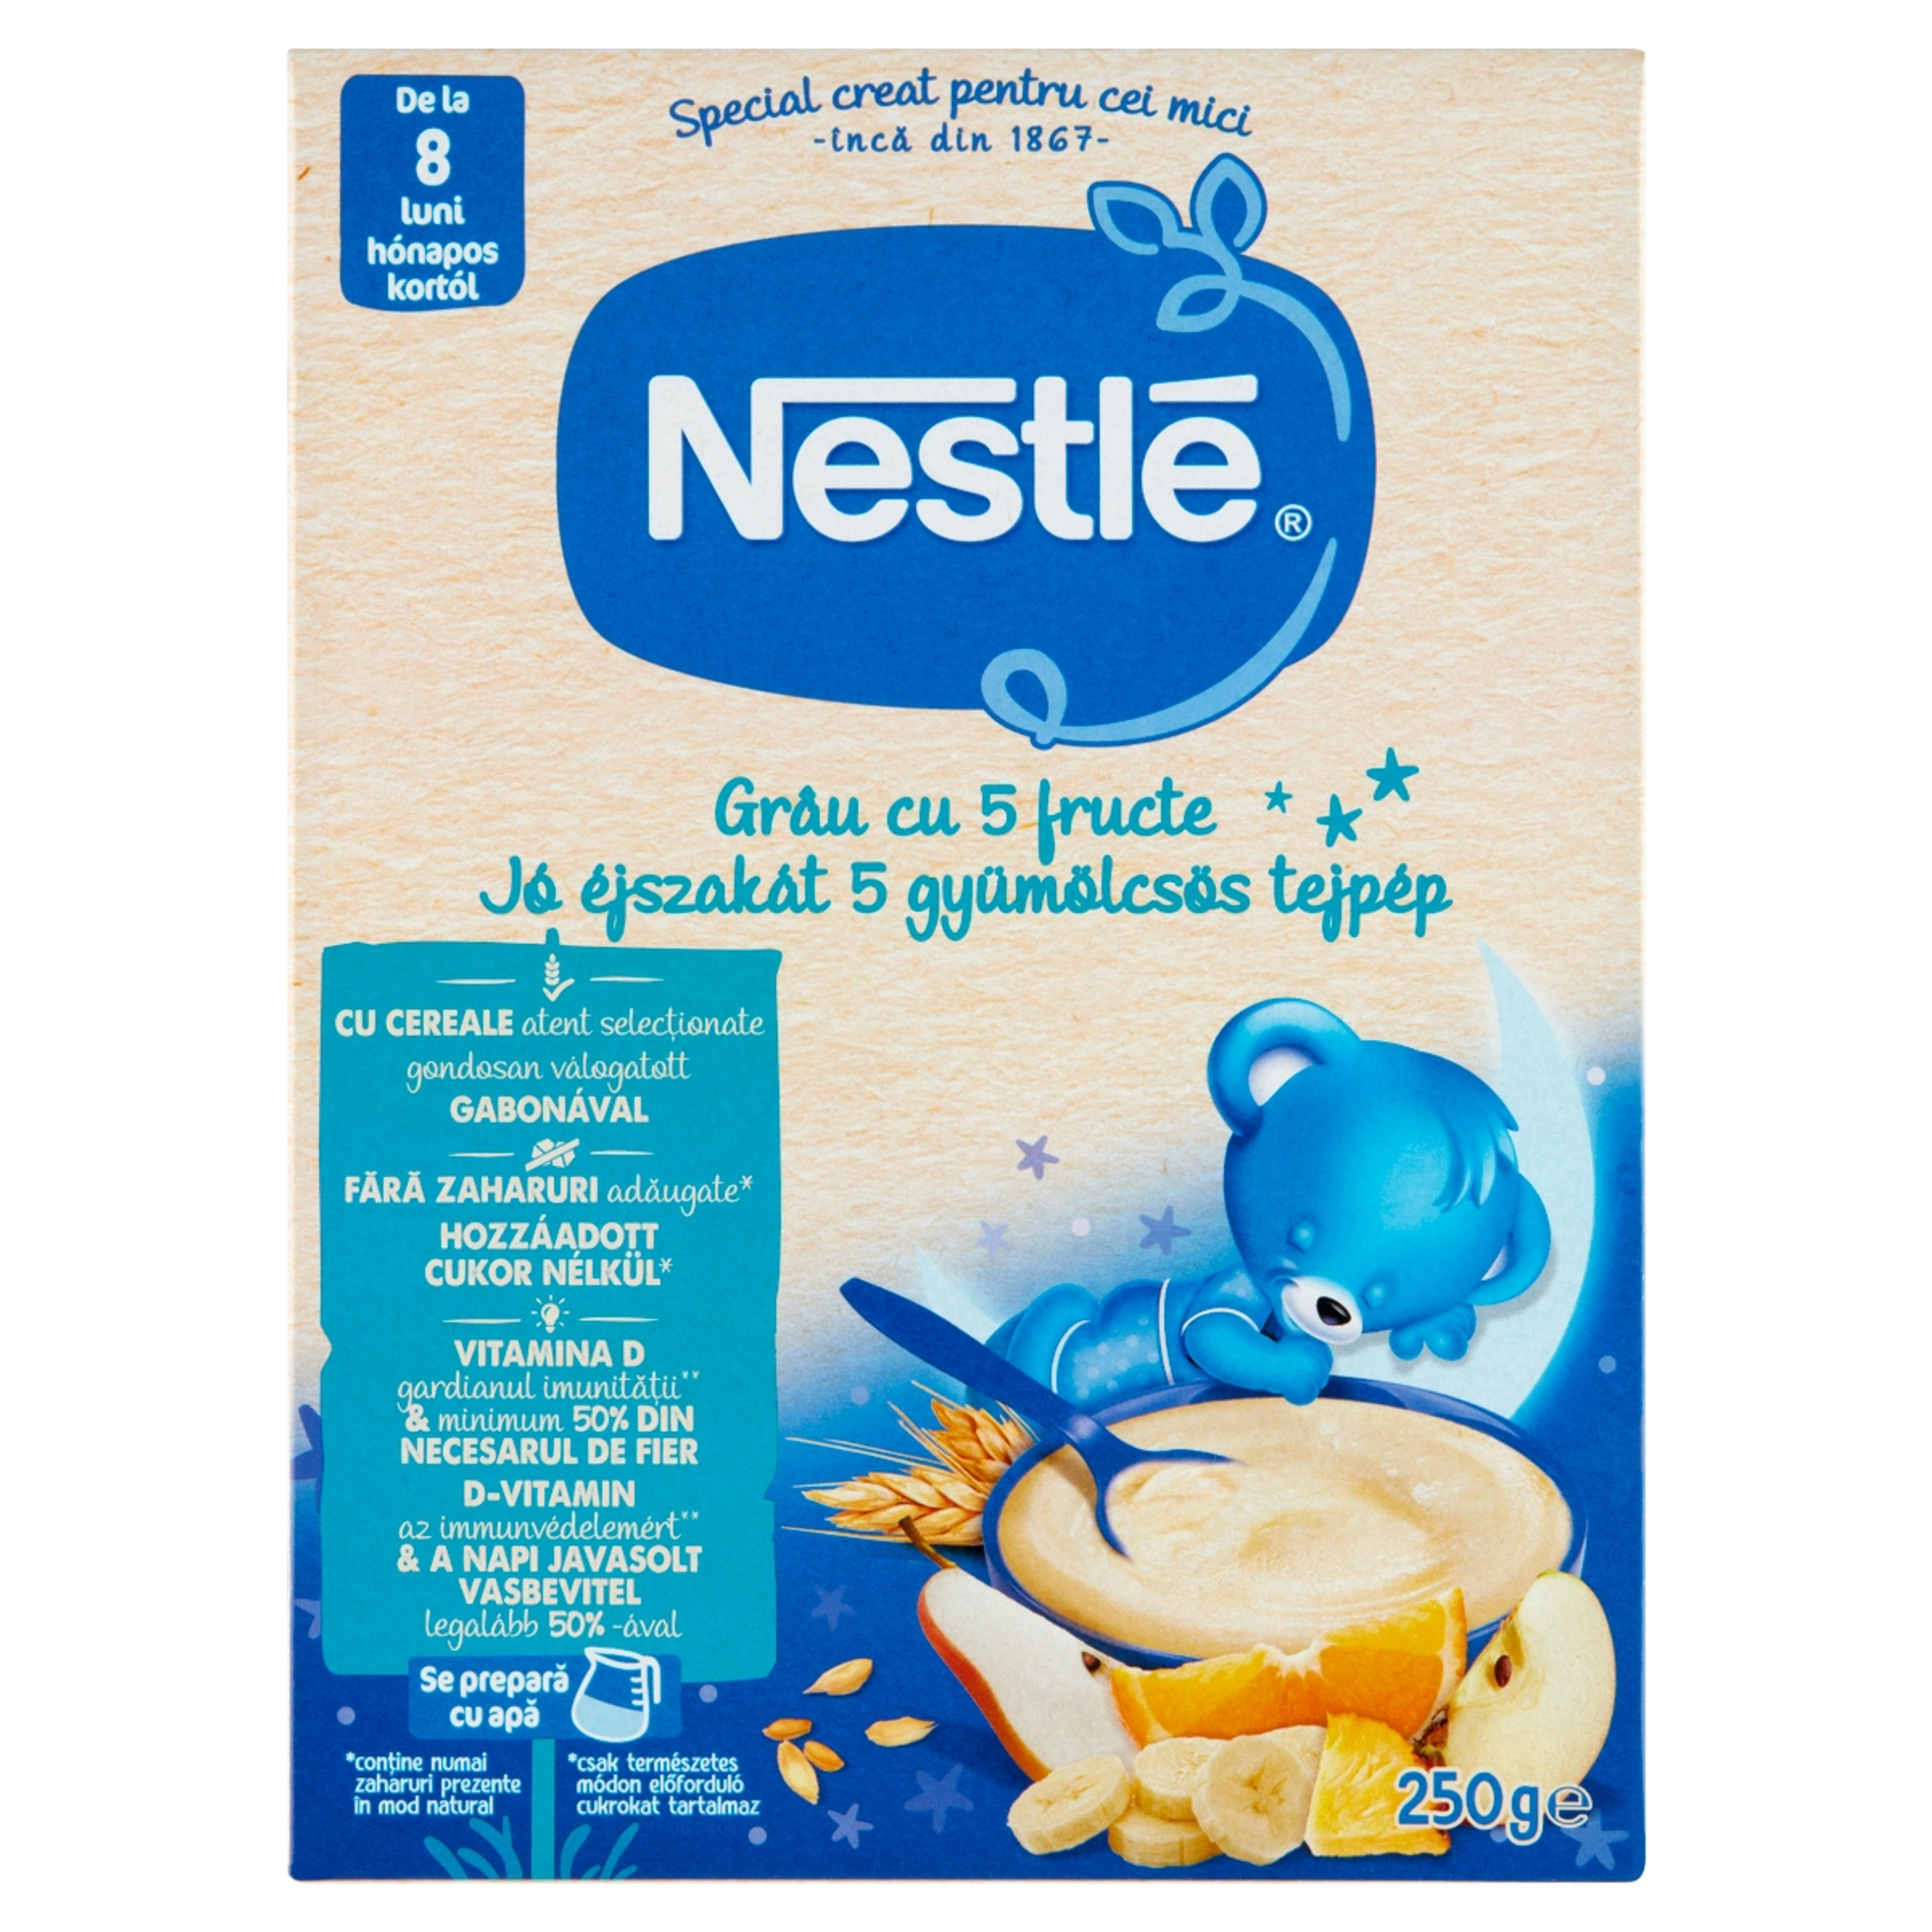 Nestle jó éjszakát 5 gyümölcsös tejpép 8 hónapos kortól - 250 g